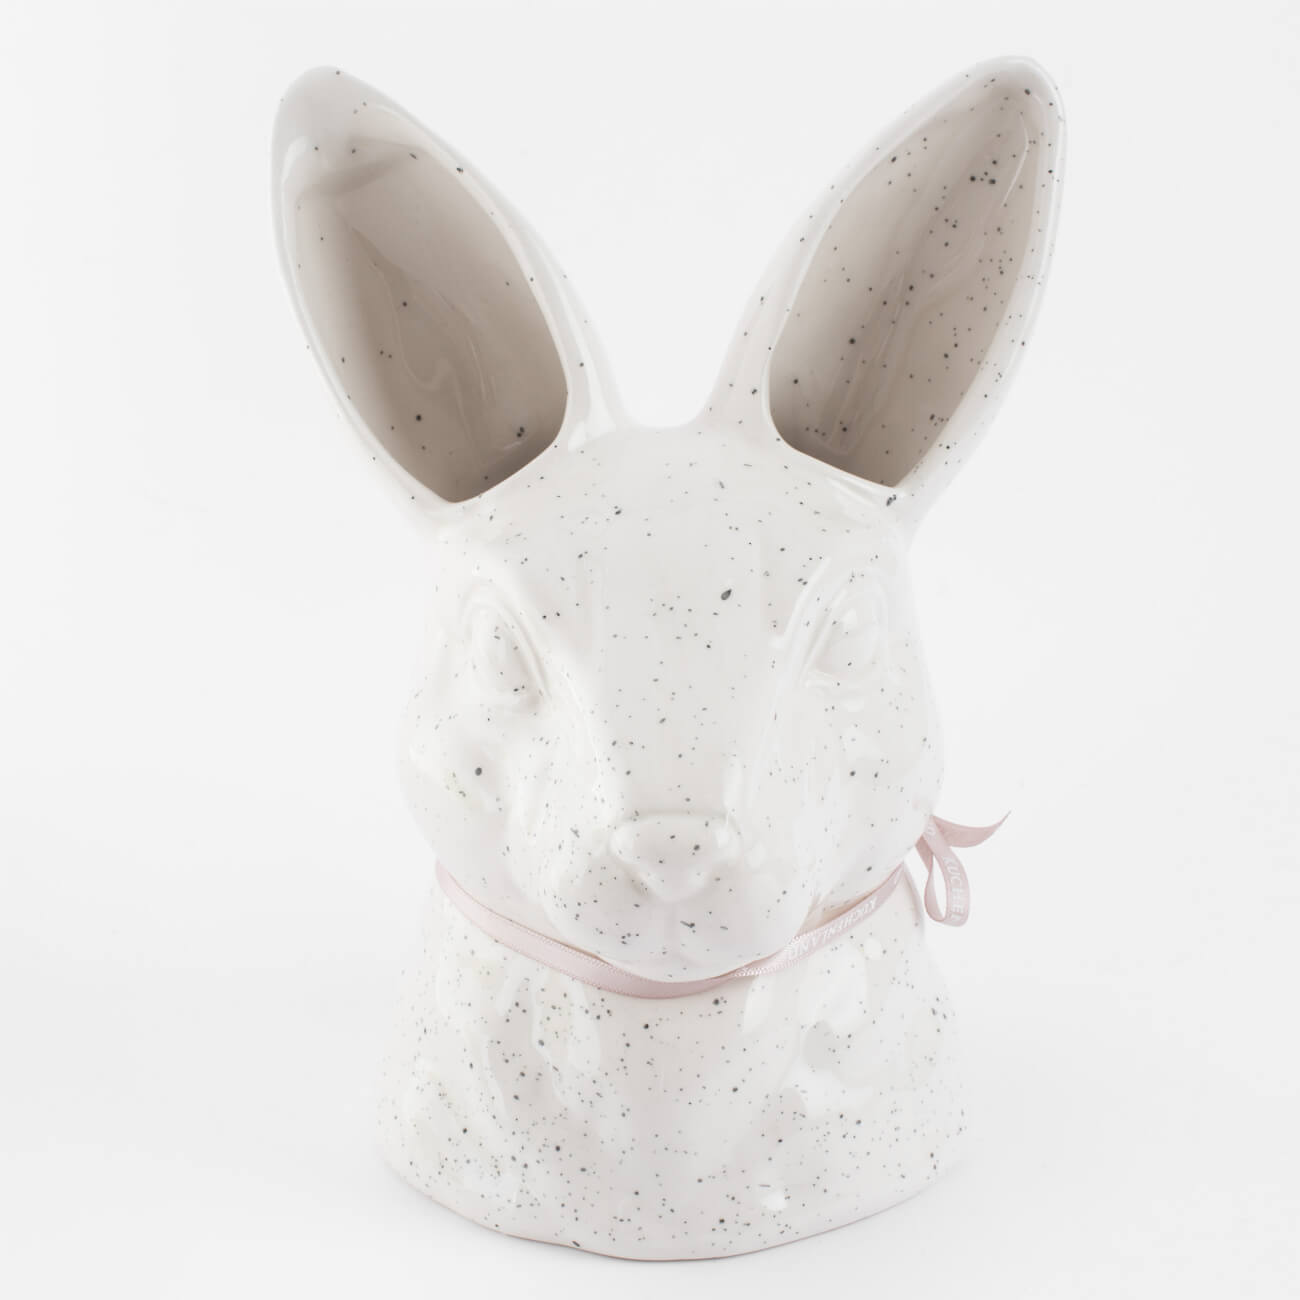 Ваза для цветов, 20 см, декоративная, керамика, молочная, в крапинку, Кролик, Natural Easter ваза для ов 19 см декоративная керамика белая женский бюст torso